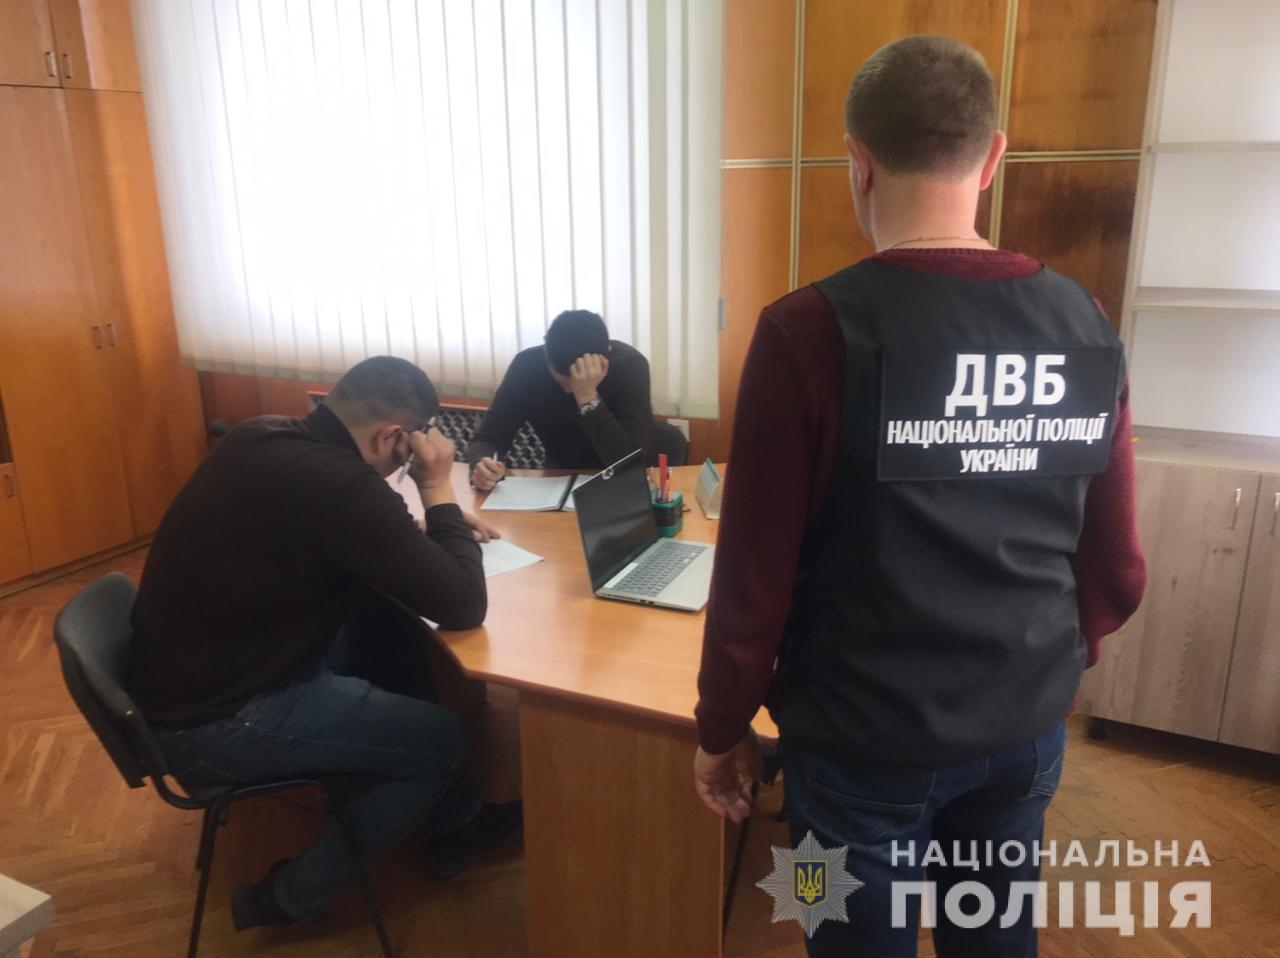 Троим правоохранителям из Волынской области вручено сообщение о подозрении за превышении служебных полномочий